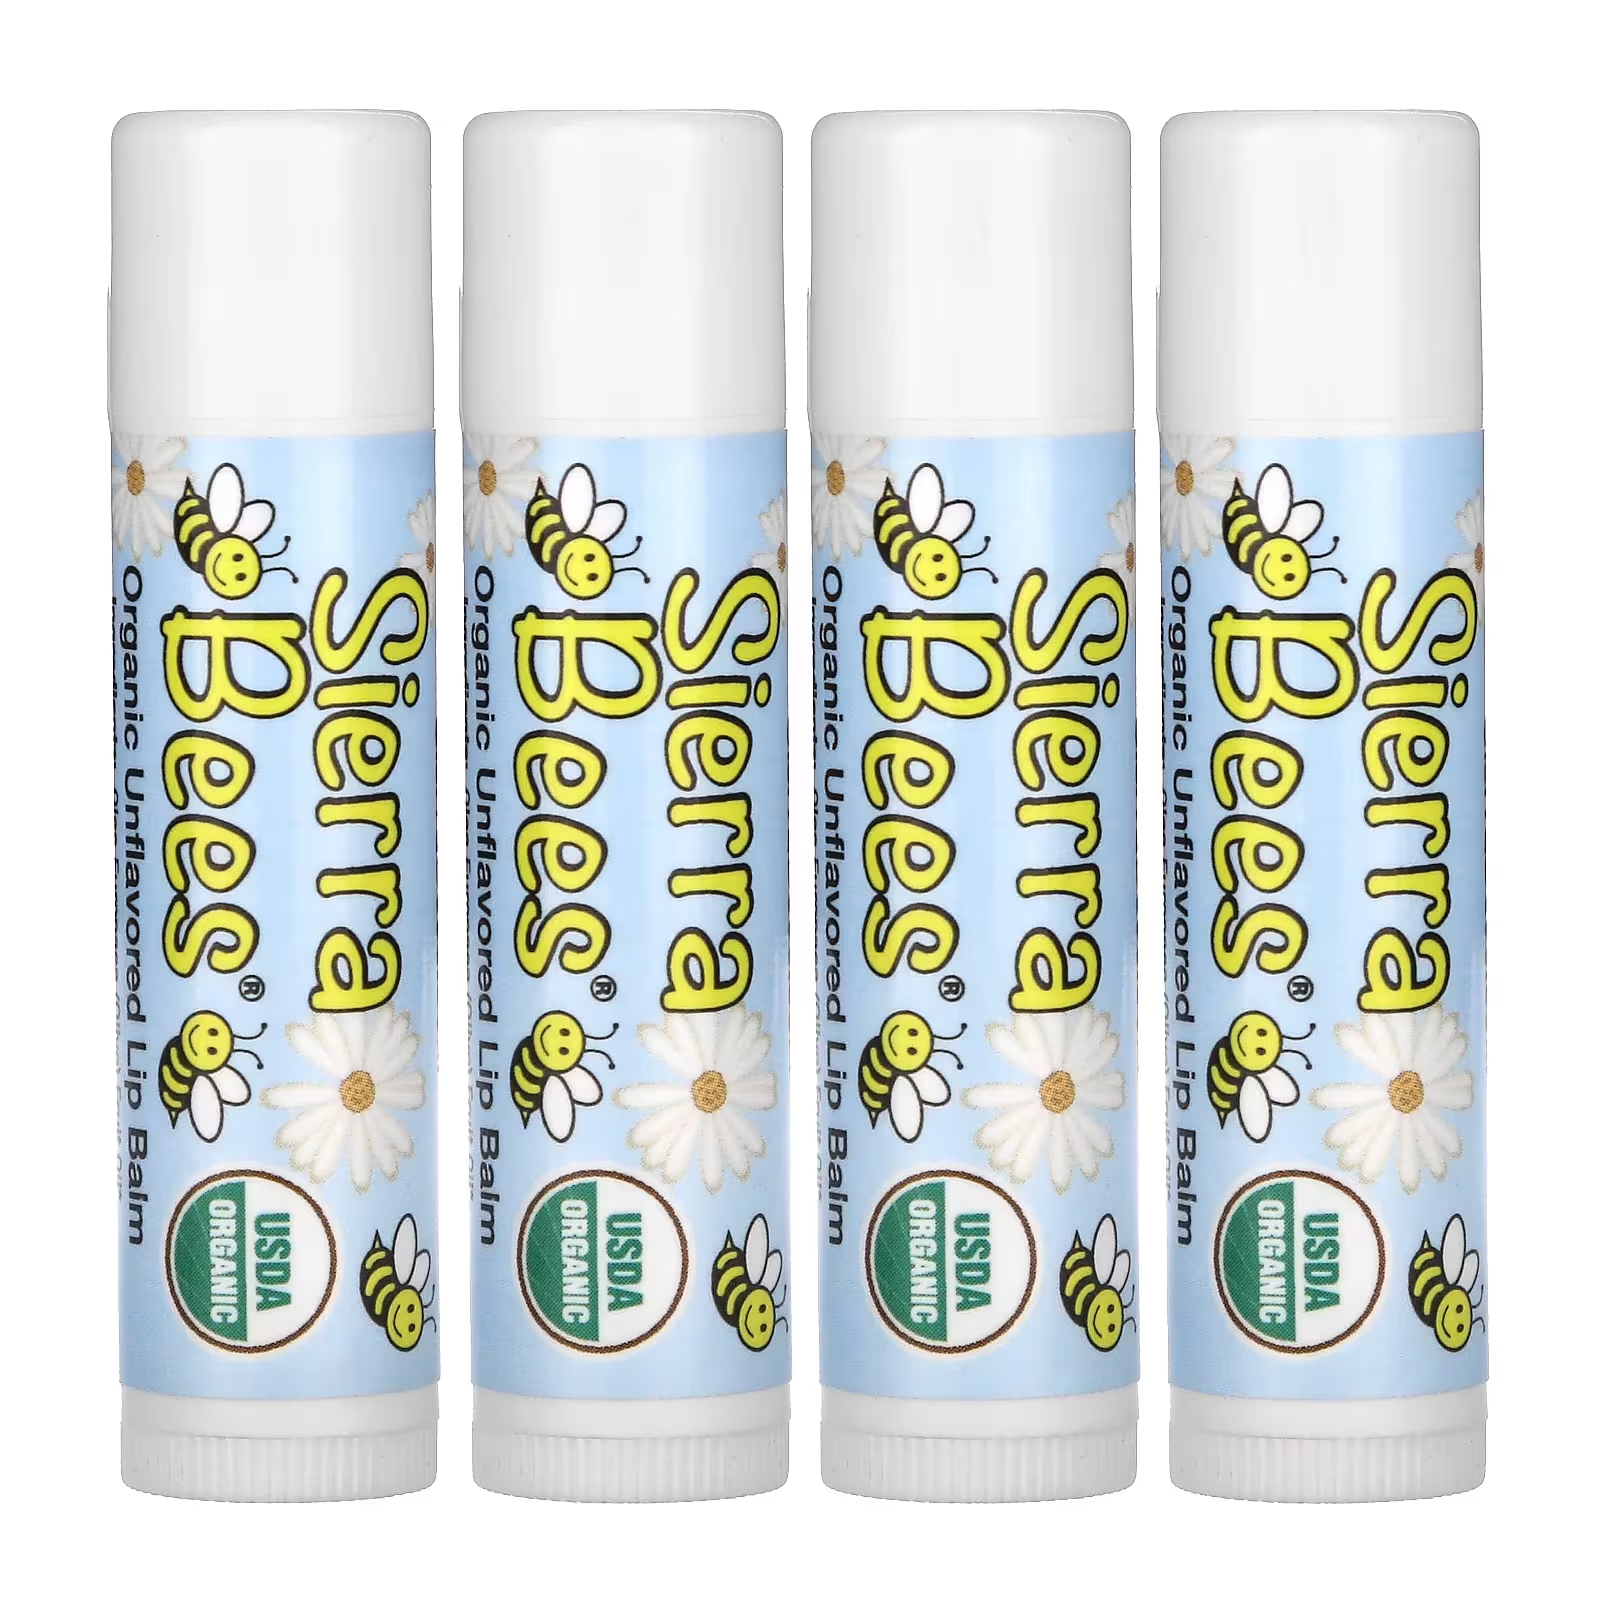 Органические бальзамы для губ Sierra Bees, 4 упаковки по 4,25 г sierra bees органические бальзамы для губ гранат 4 шт